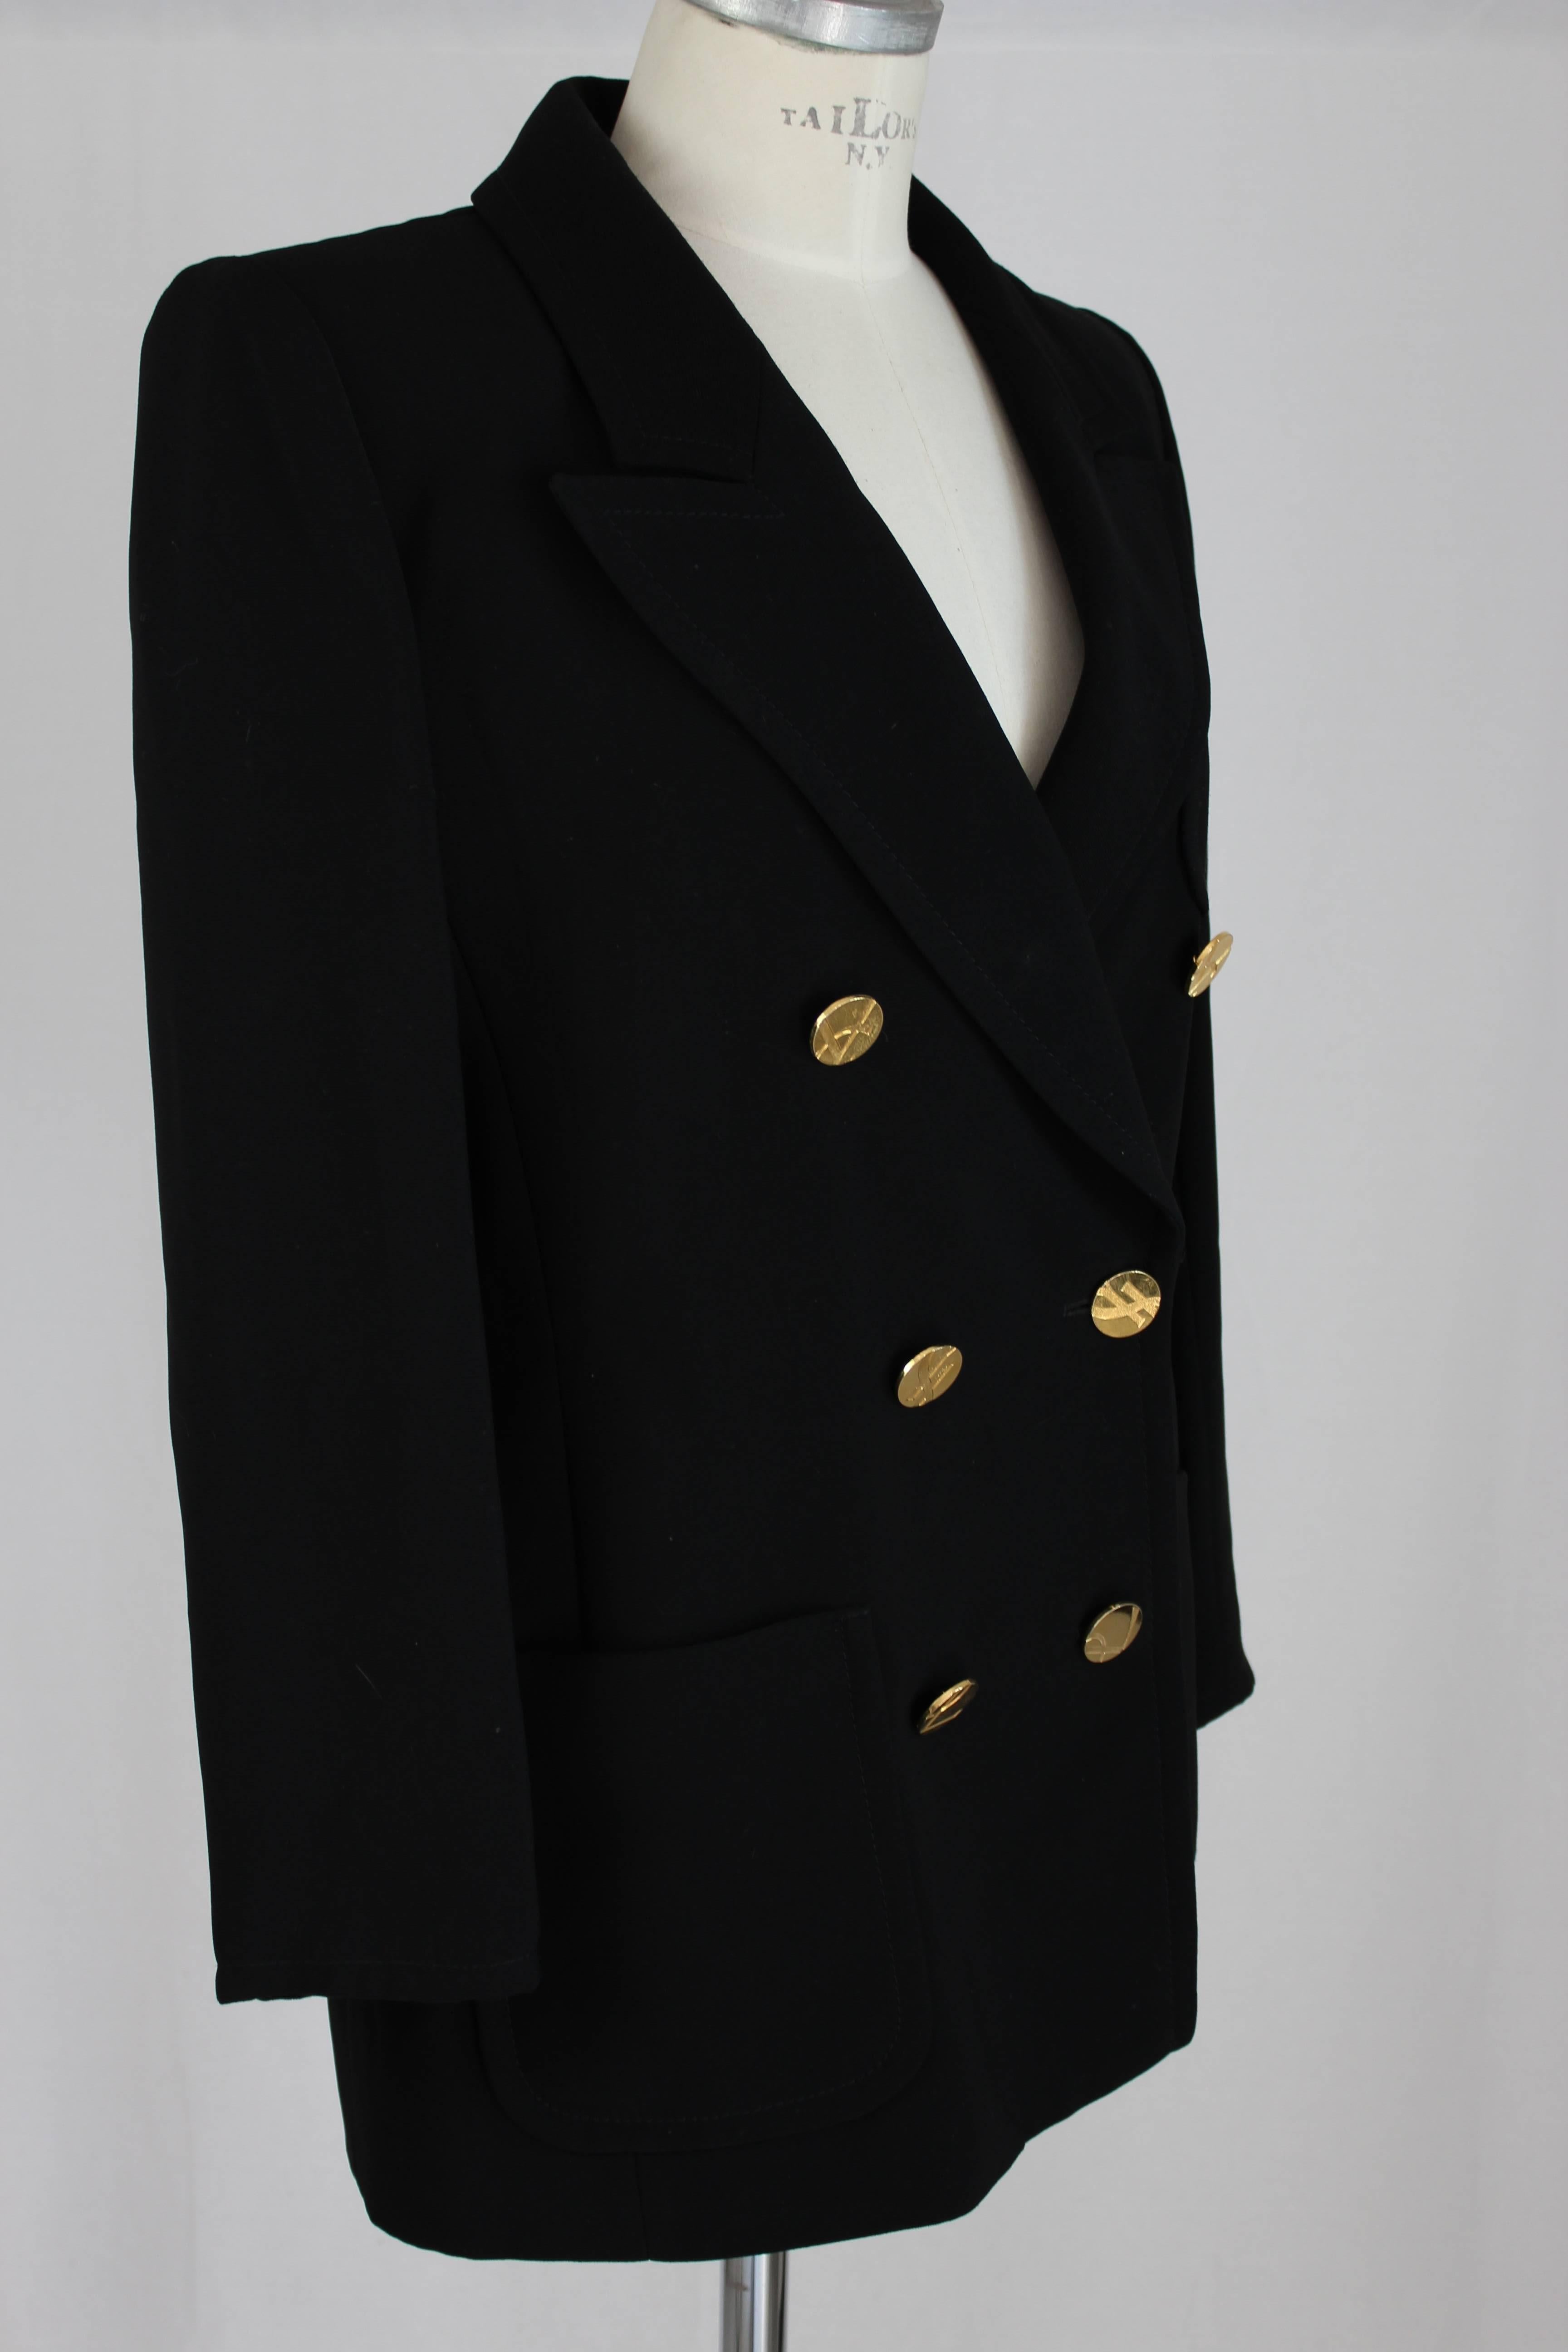 Jacket Yves Saint Laurent vintage 1990s double-breasted with gold logo buttons, beautiful slim fit. Excellent vintage conditions.

Size 40 (FR) = 8 (US)

Shoulder: 46 cm
Armpit Armpit: 50 cm
Sleeve: 53 cm
Length: 78 cm

Composition: 100%